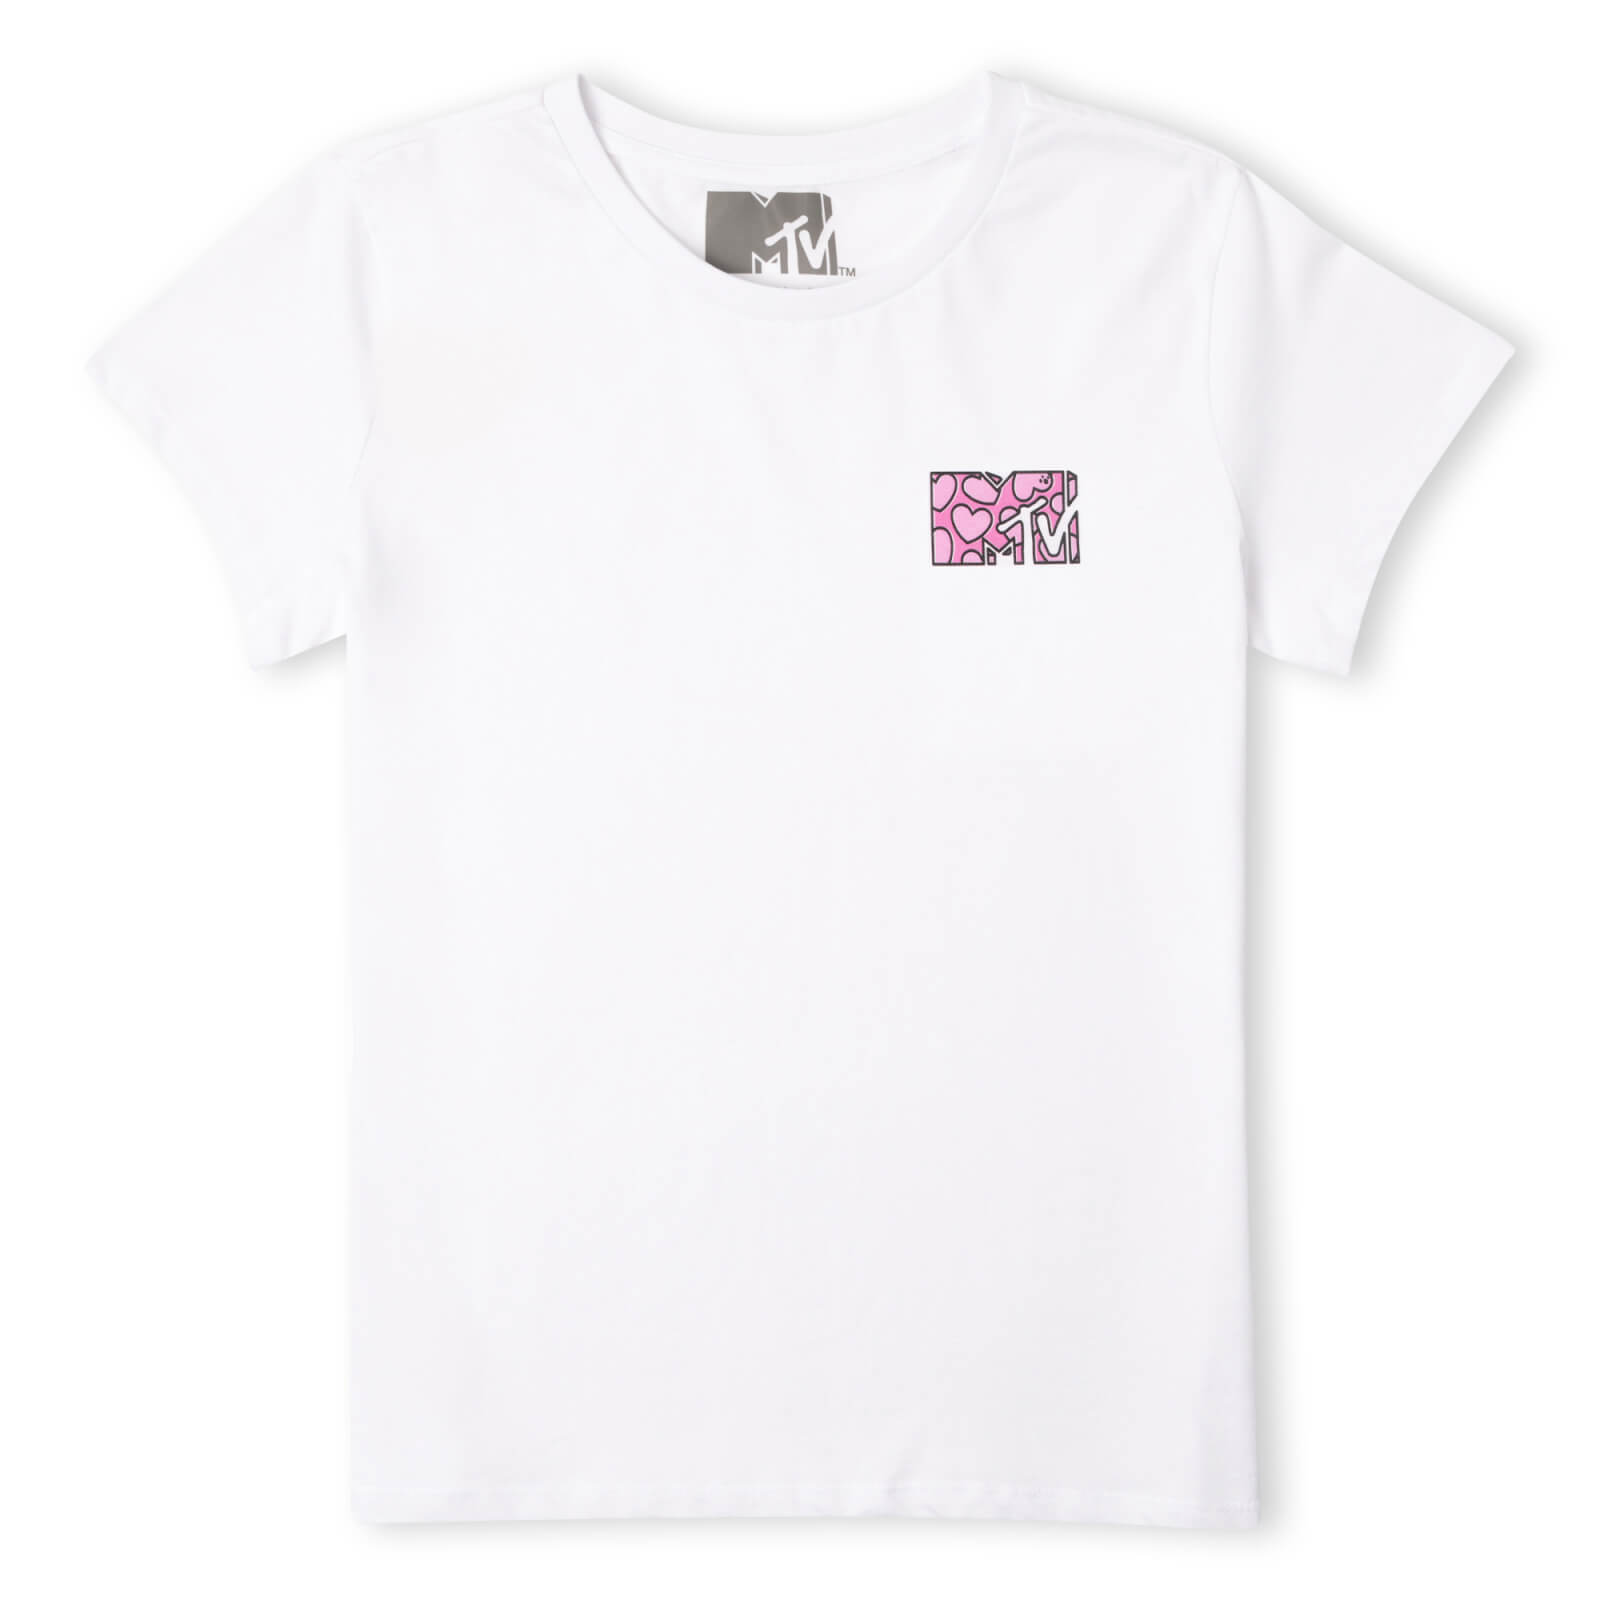 MTV Heart Logo Men's T-Shirt - White - XS - White